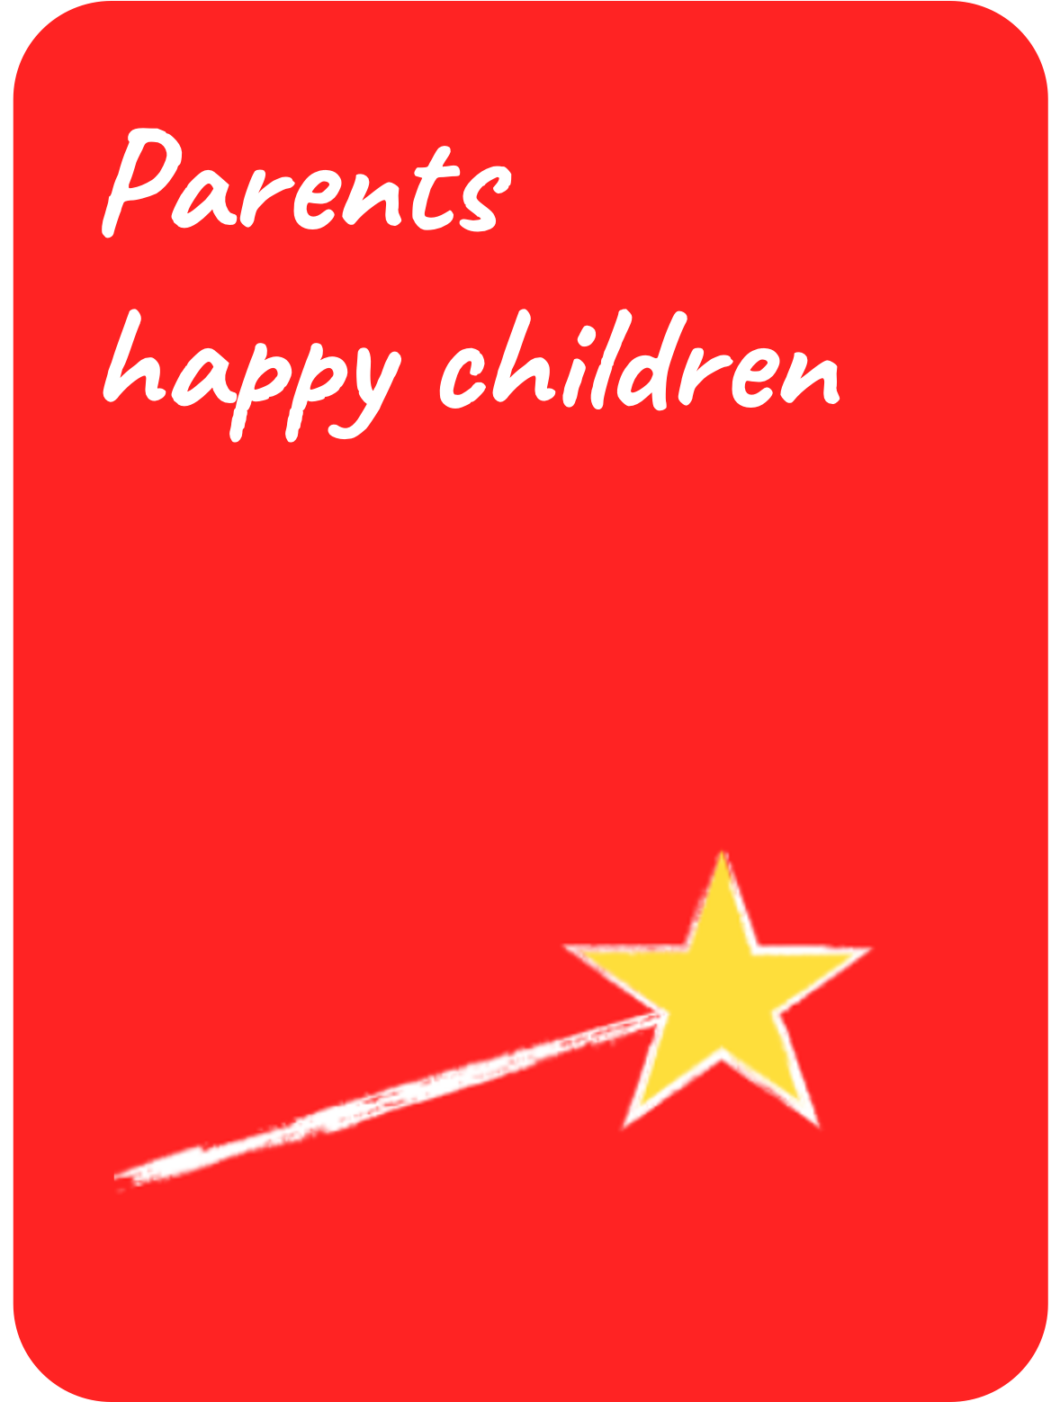 Parents happy children